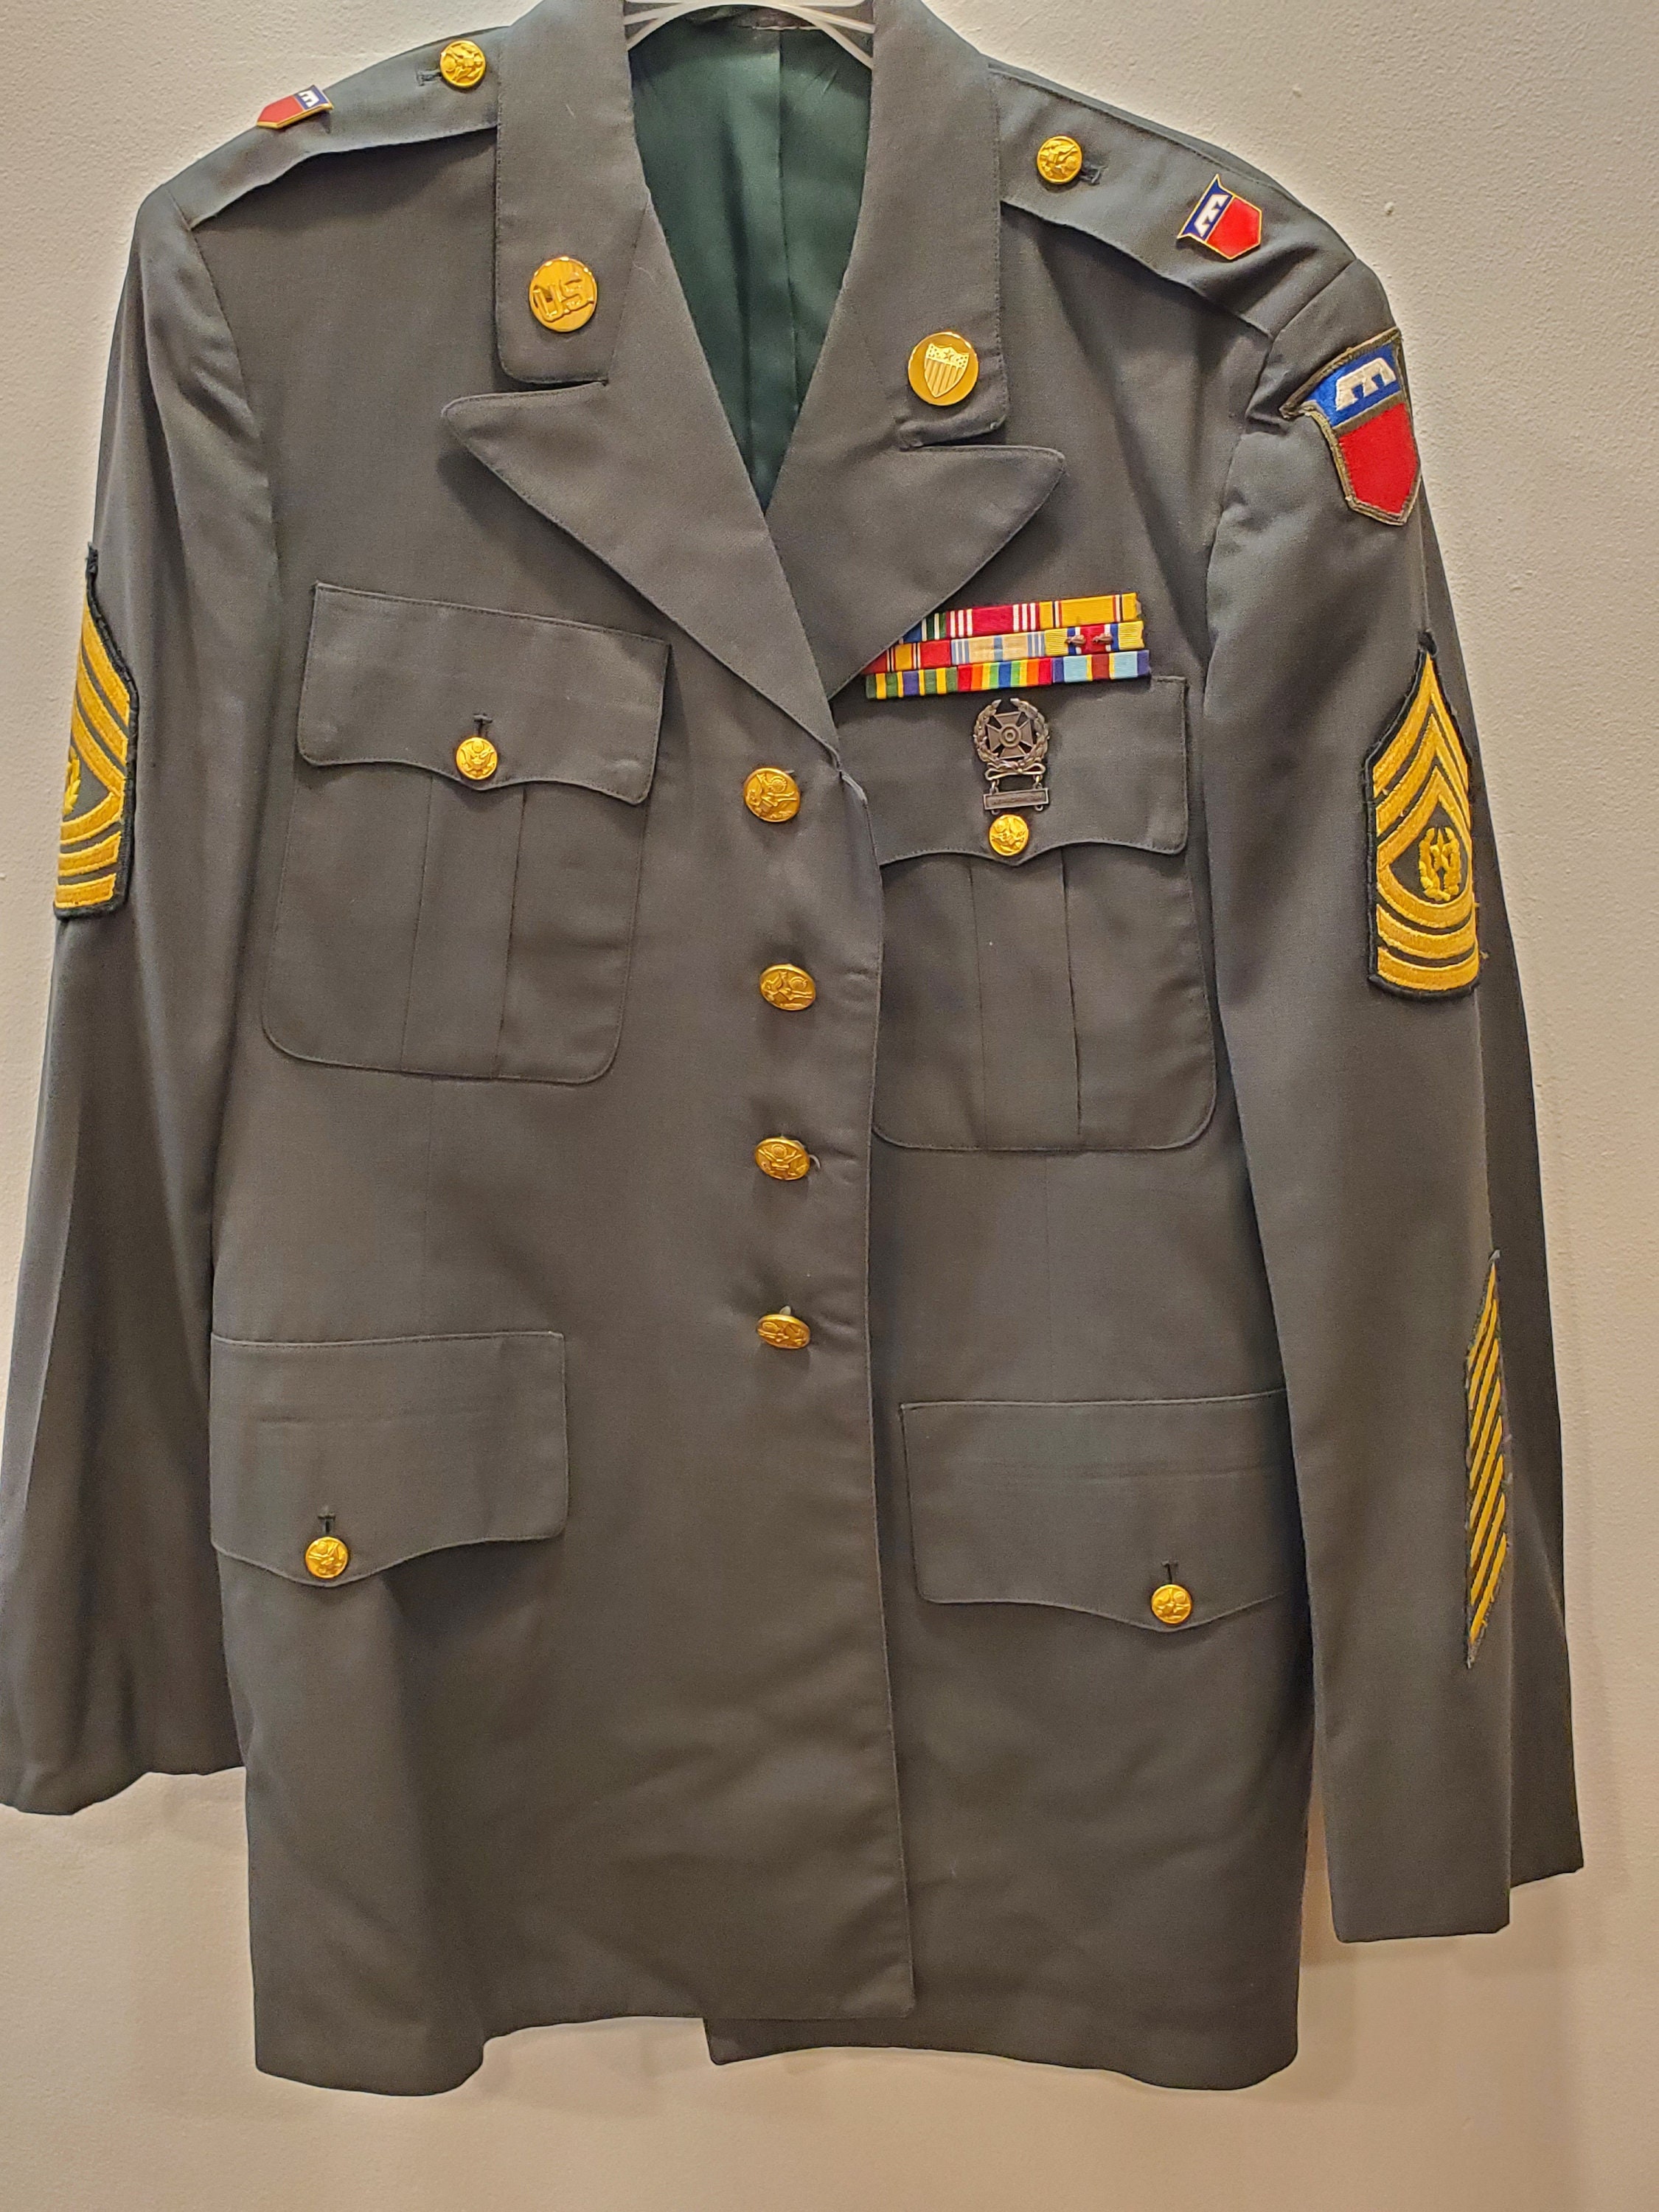 Original Vietnam Era 1967 Green Full Uniform Master Sgt. Command 79th ...